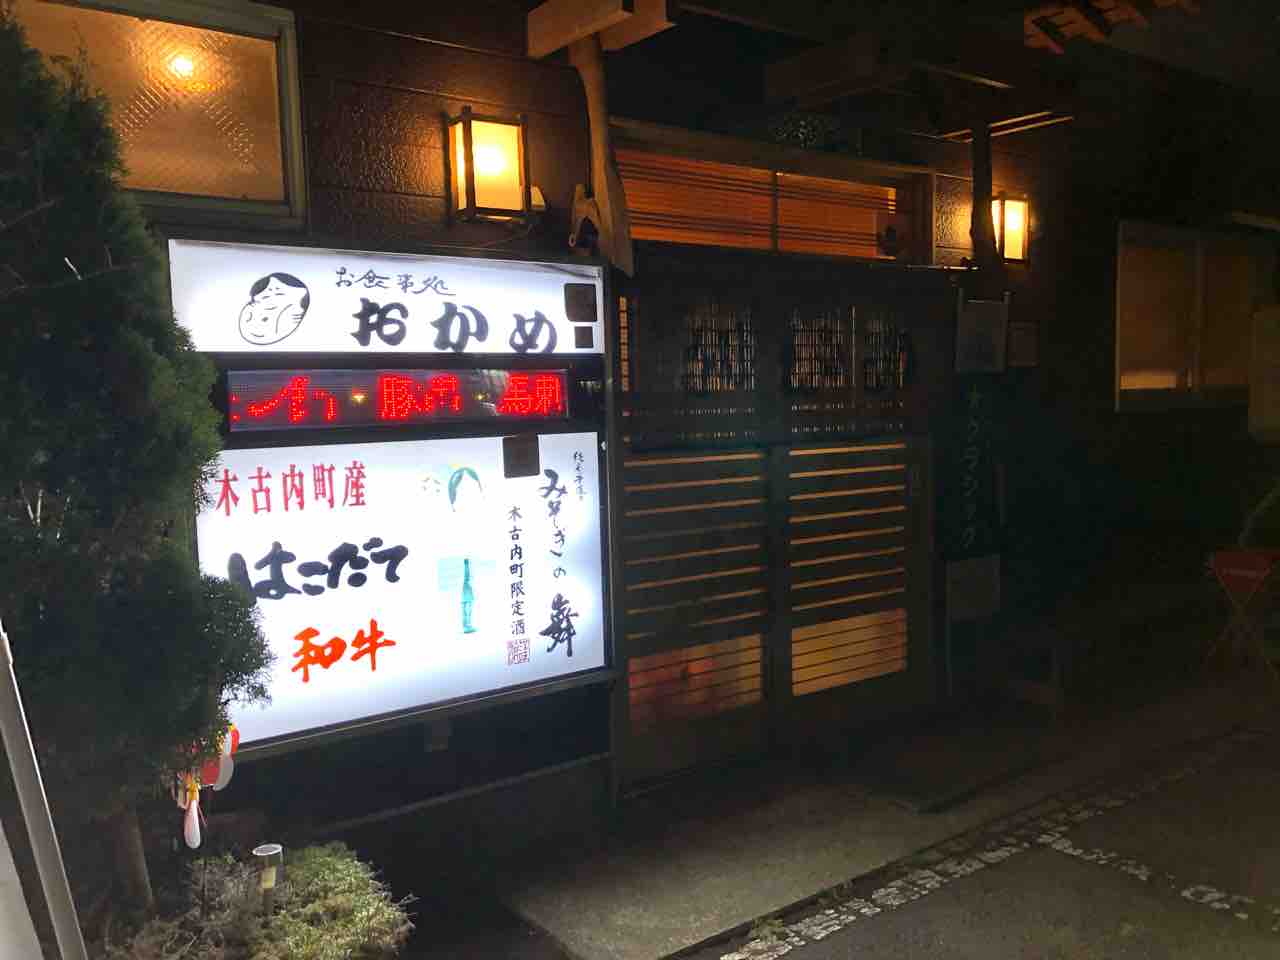 木古内町の お食事処おかめさんに行ってきました 函館 気まぐれブログ